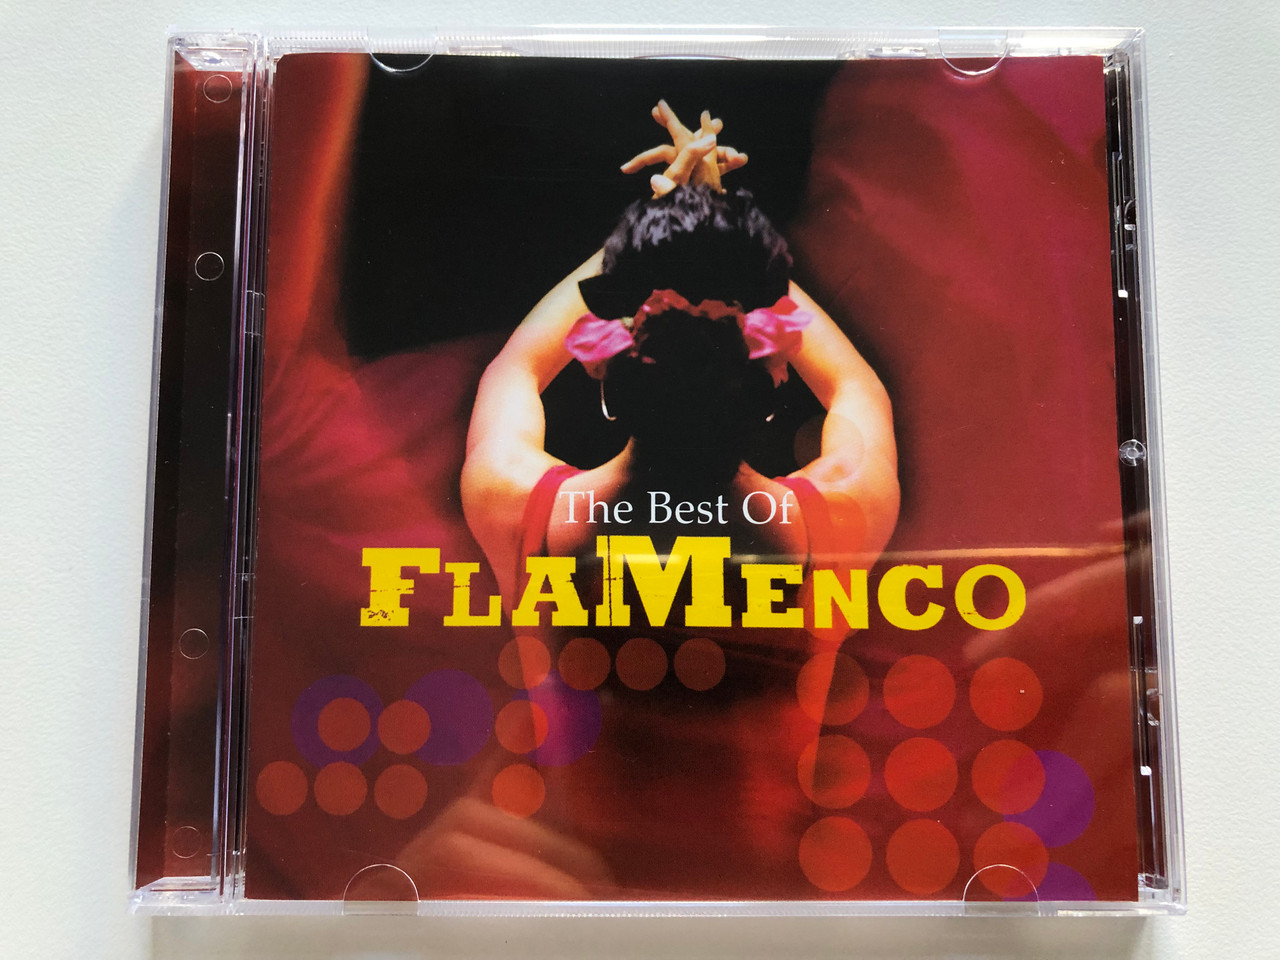 https://cdn10.bigcommerce.com/s-62bdpkt7pb/products/0/images/205093/The_Best_Of_Flamenco_Universal_Audio_CD_2003_0602498124567_1__09488.1641576211.1280.1280.JPG?c=2&_gl=1*s9iq6n*_ga*MjA2NTIxMjE2MC4xNTkwNTEyNTMy*_ga_WS2VZYPC6G*MTY0MTU3Mjg3MS4yNTIuMS4xNjQxNTc2MDk4LjMx